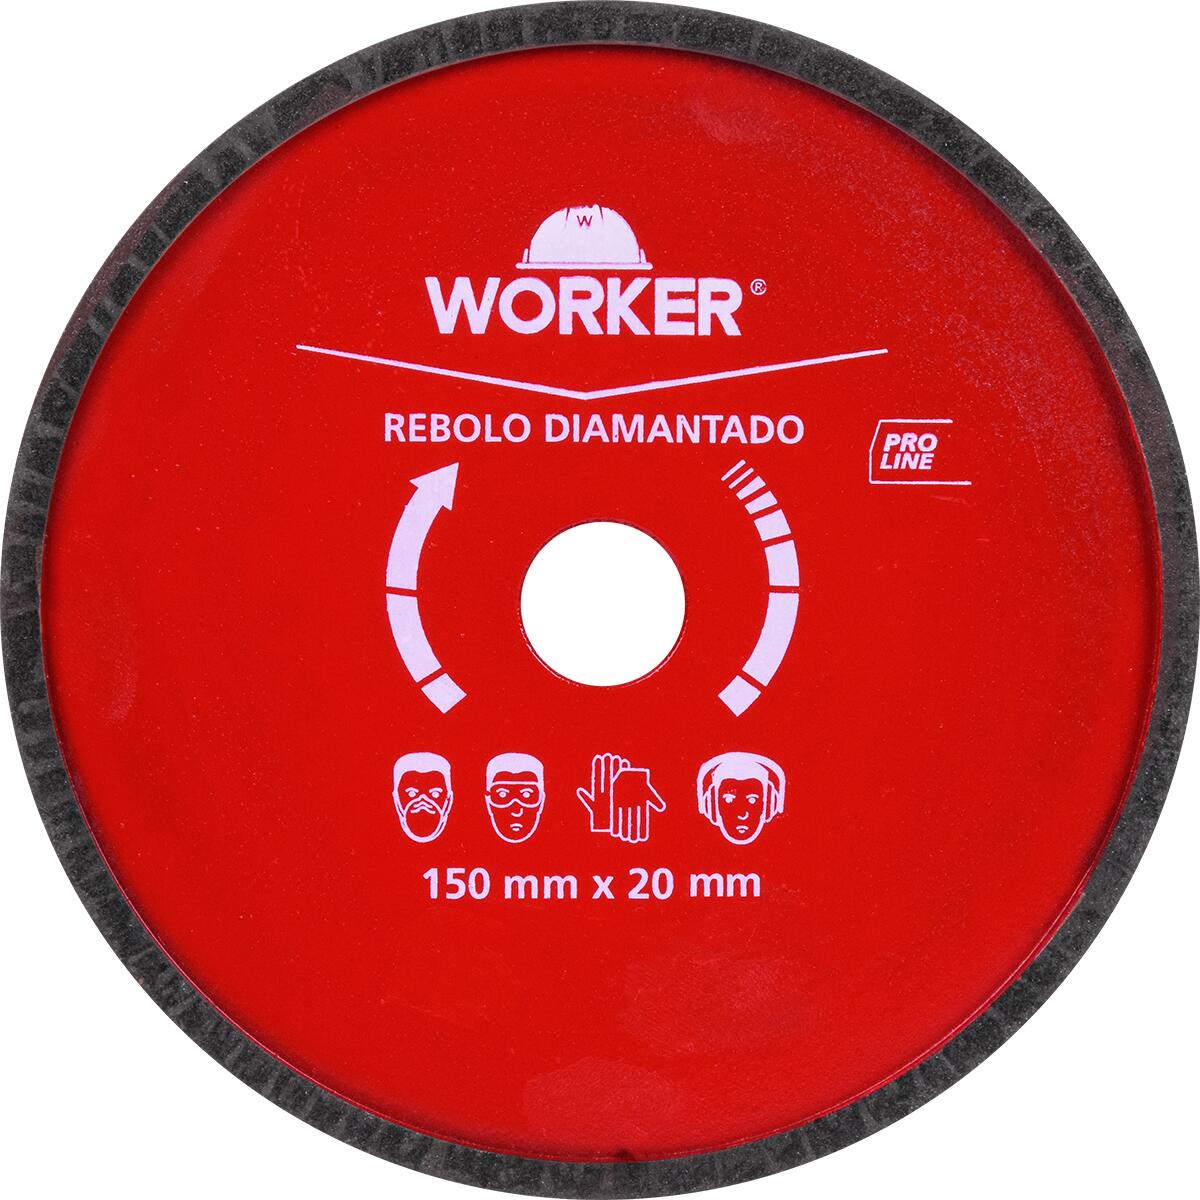 Rebolo Diamantado para Afiação de Serras 150X20Mm Worker